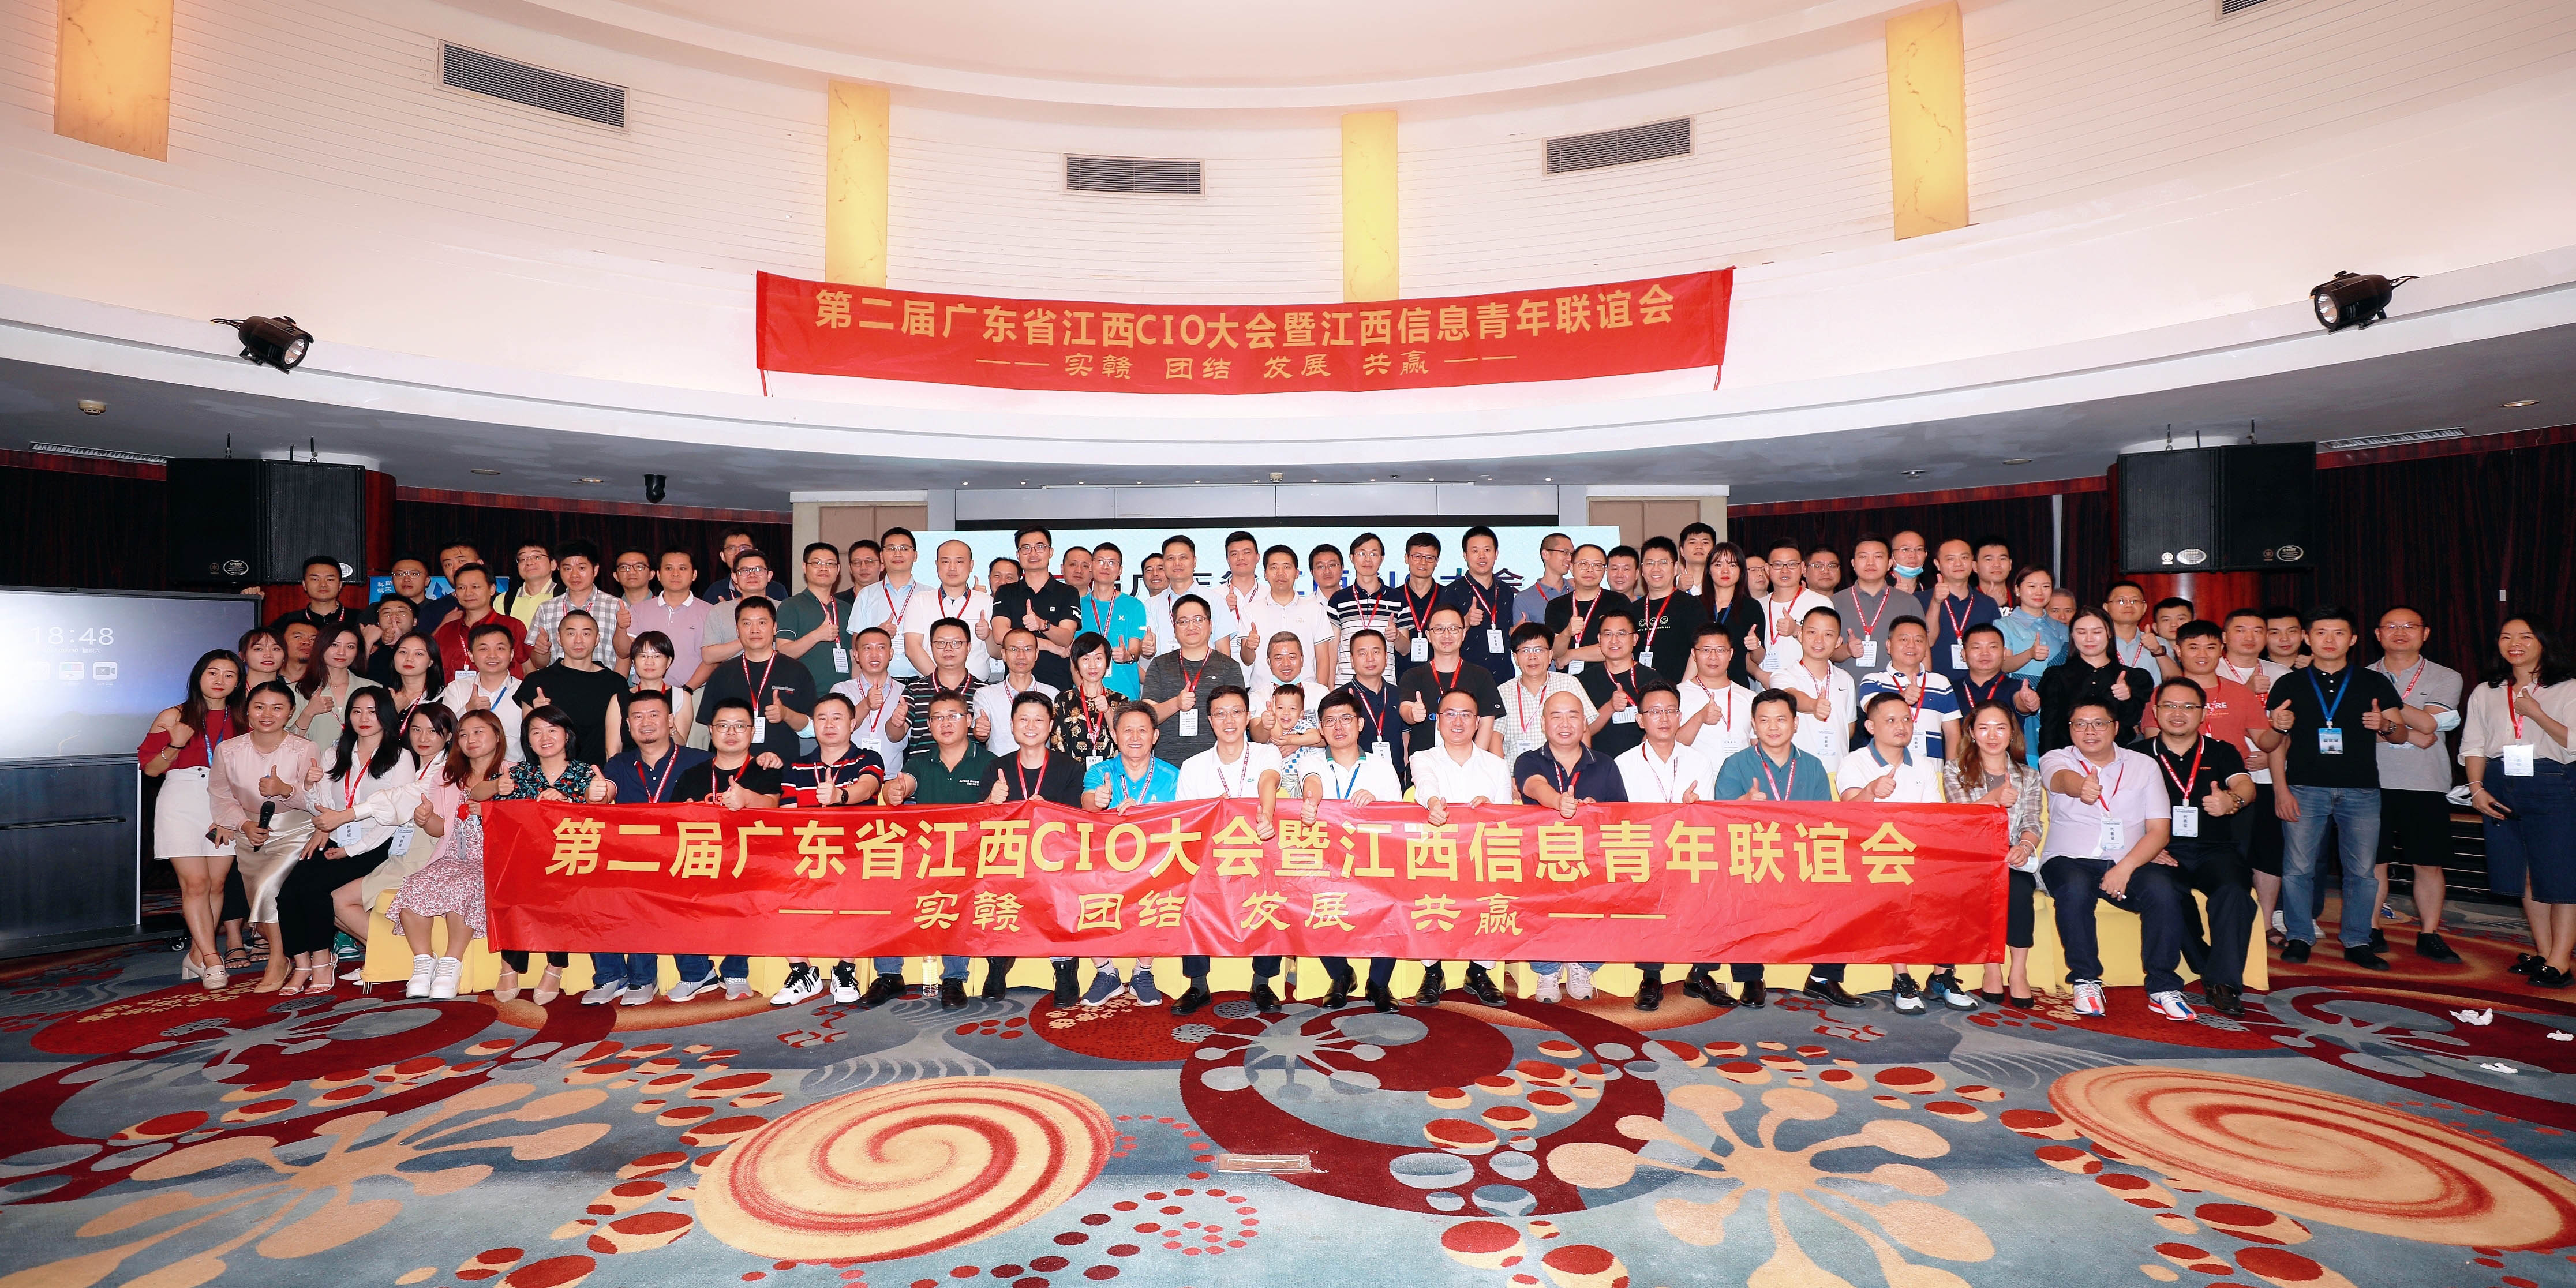 与实“赣”者同行，工博科技受邀出席第二届广东省江西CIO大会暨江西信息青年联谊会